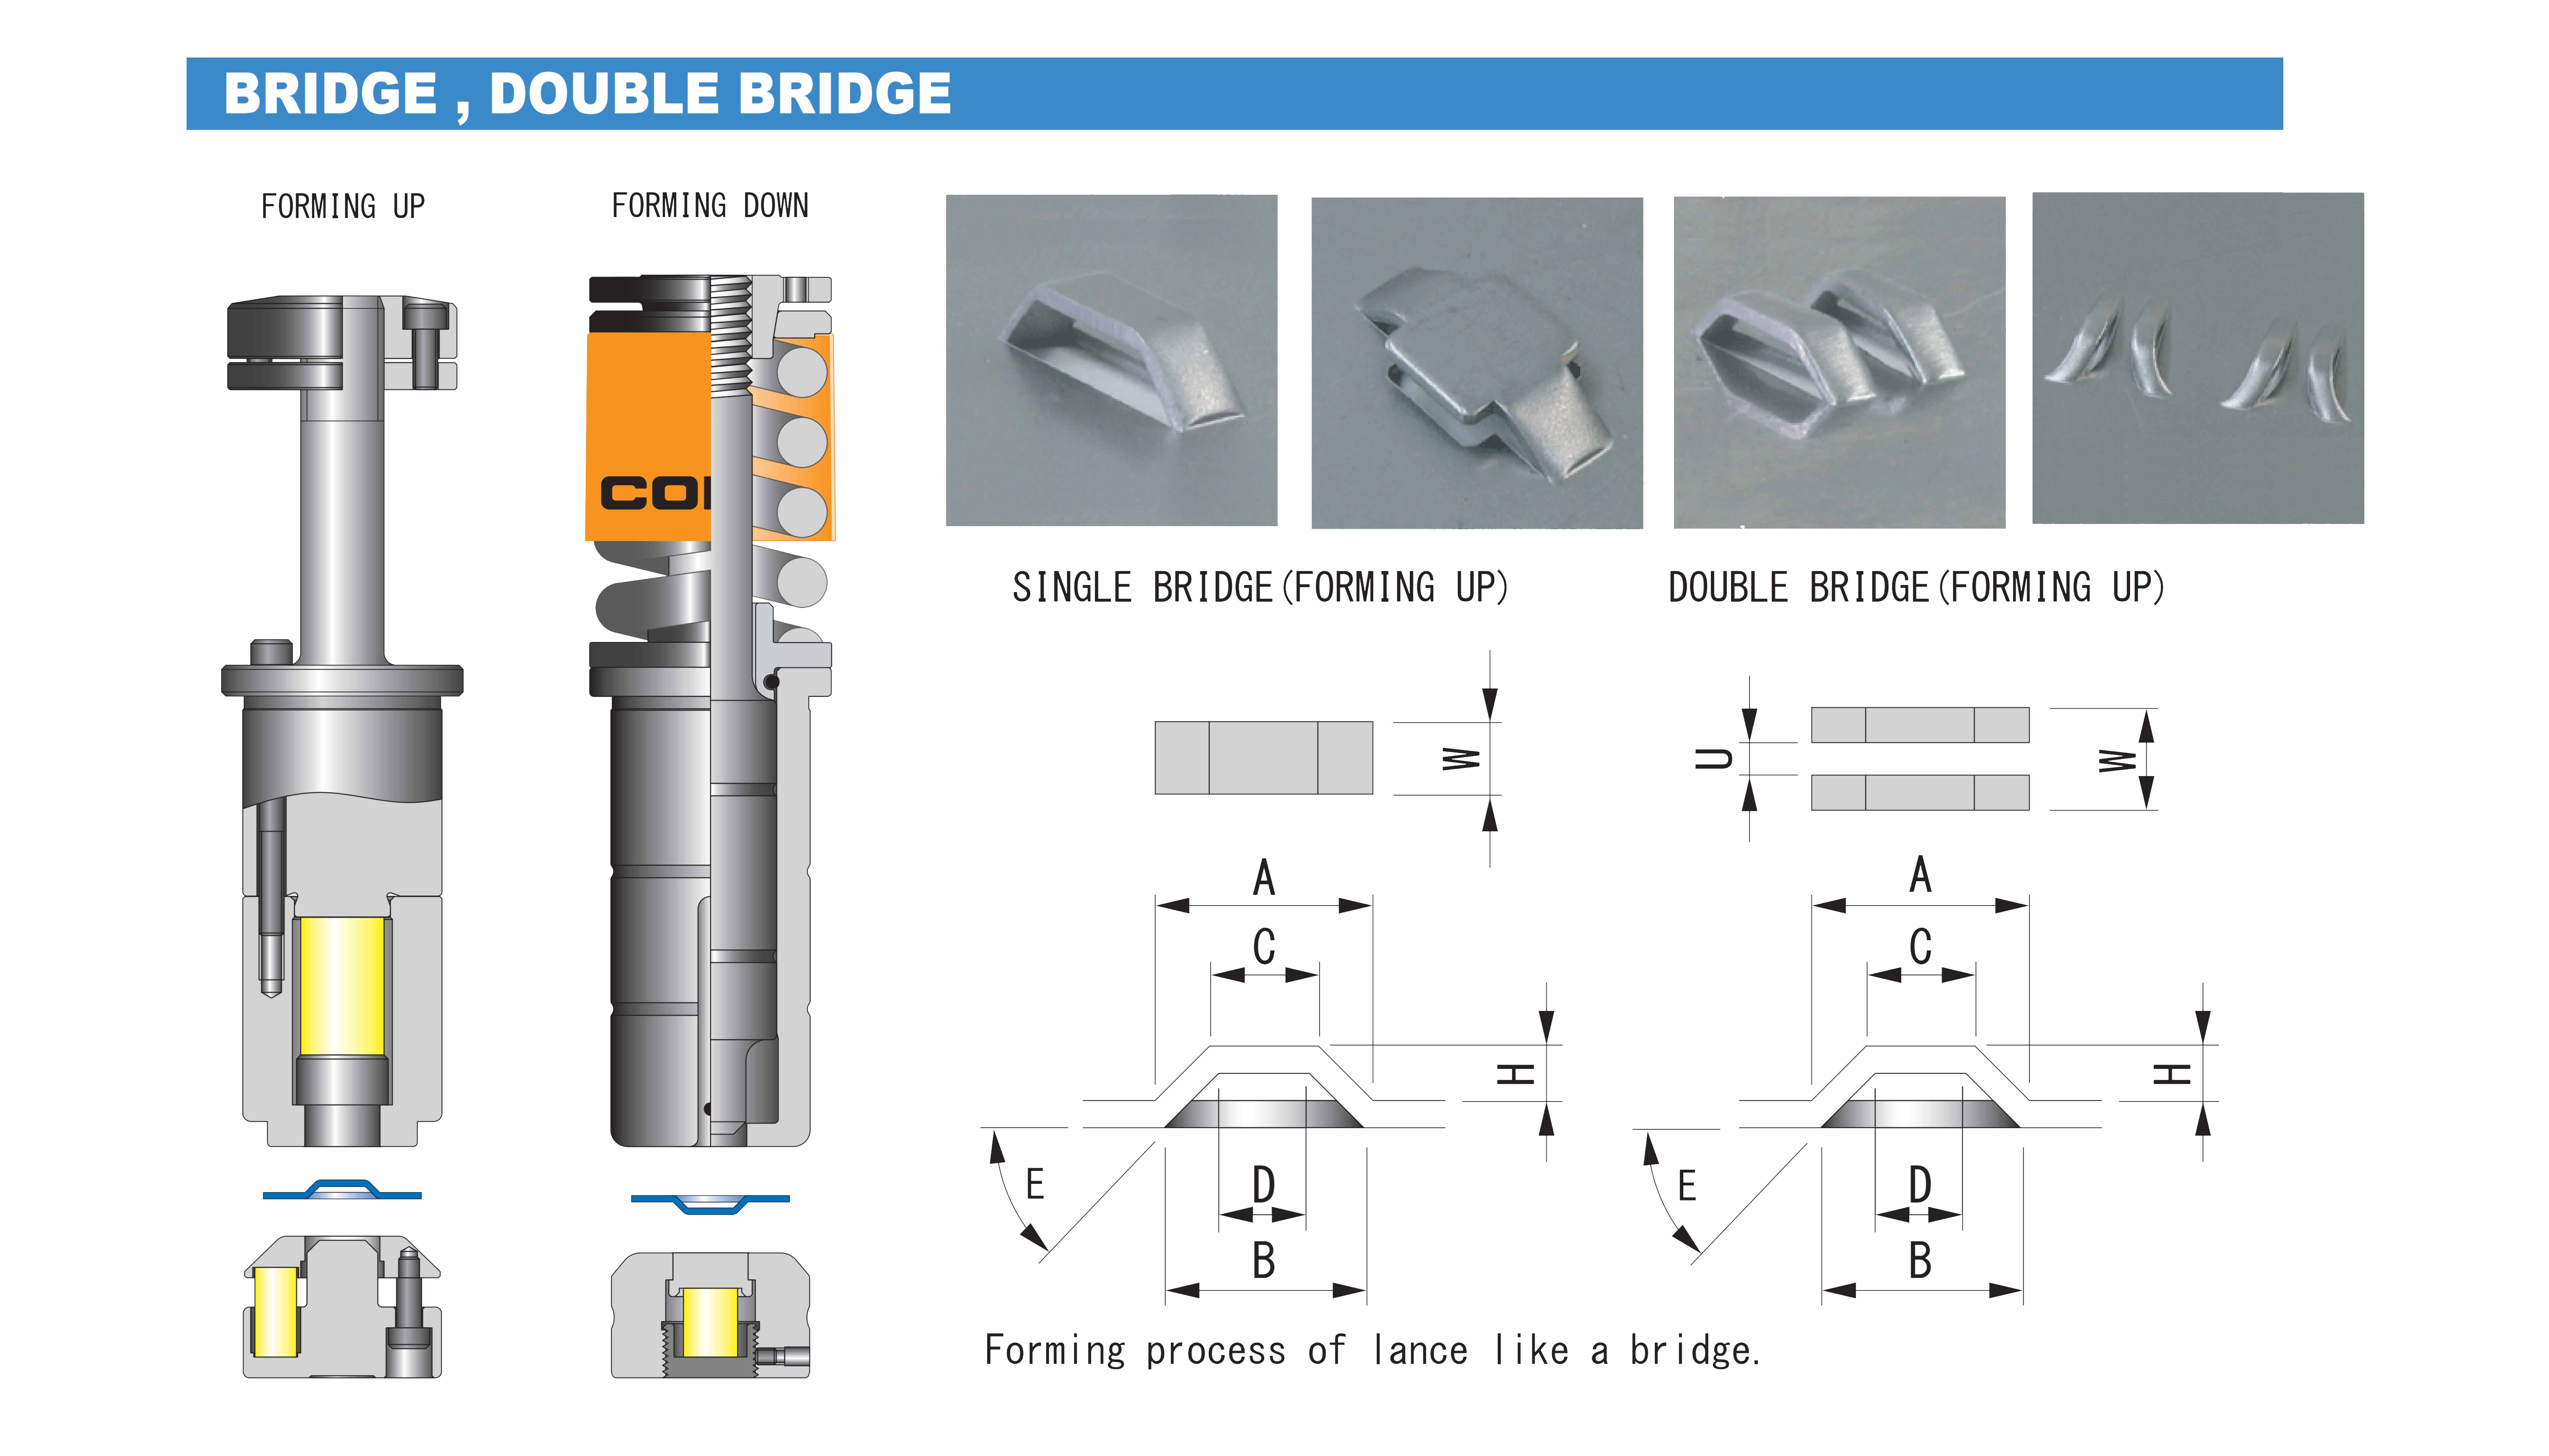 CONIC-TOOL-FORMING-BRIDGE